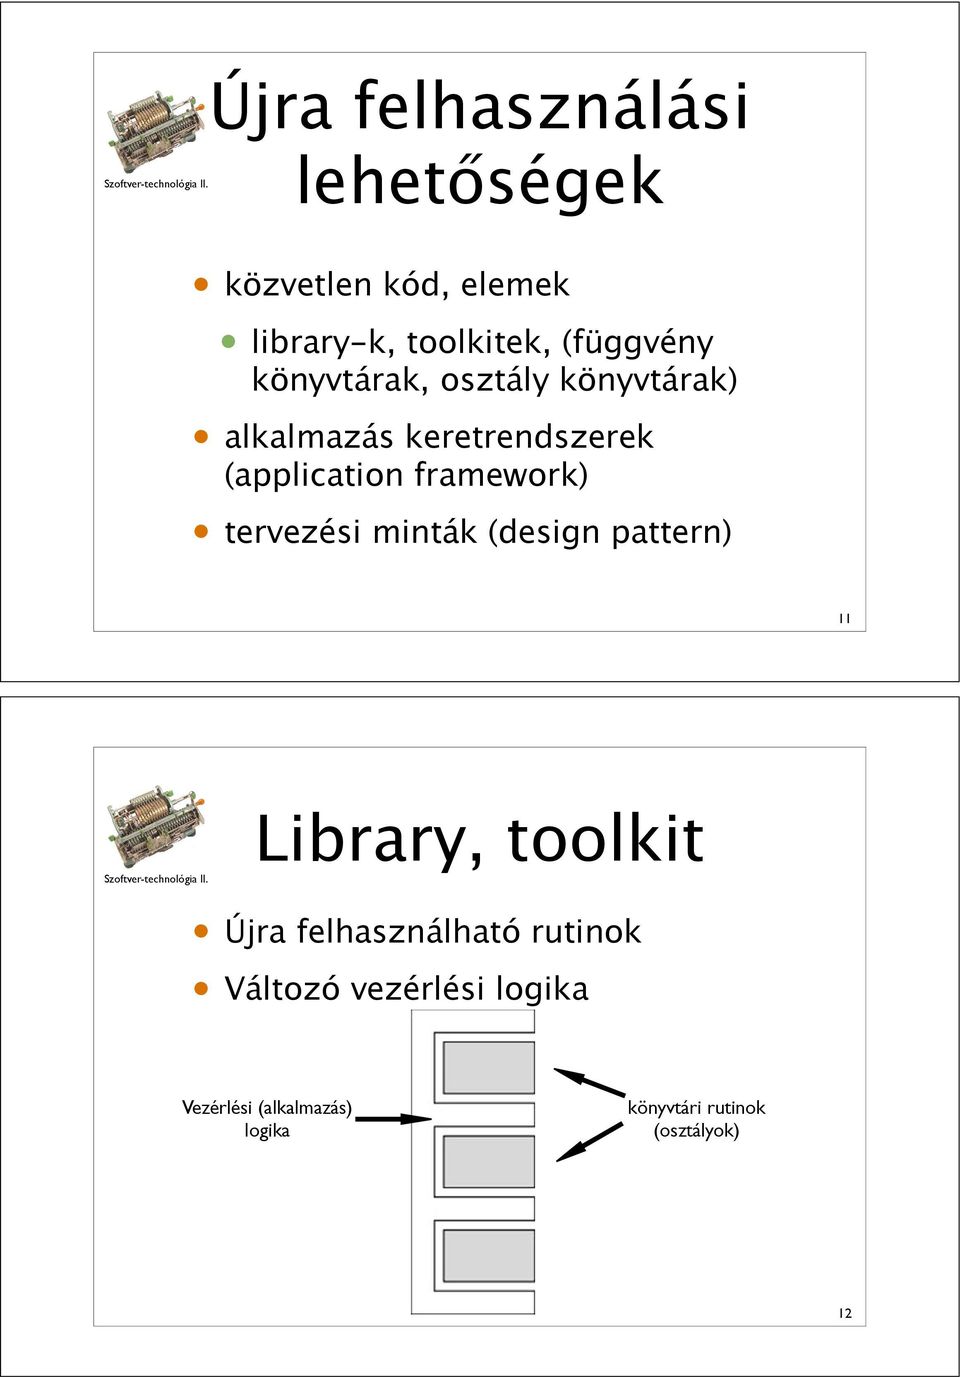 könyvtárak) alkalmazás keretrendszerek (application framework) tervezési minták